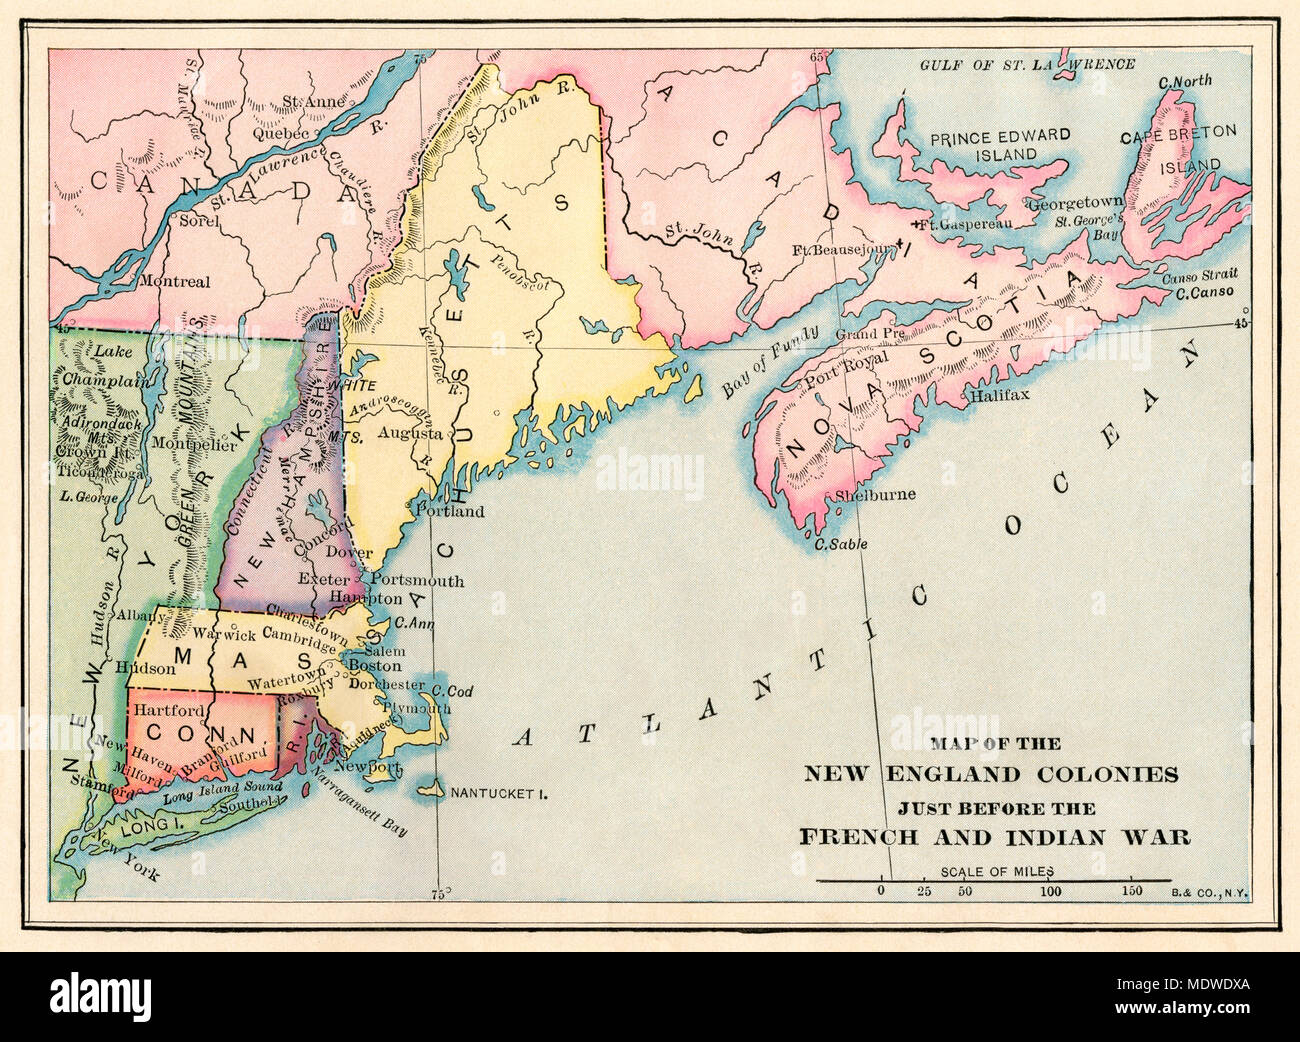 La Nuova Inghilterra colonie appena prima che la guerra di indiano e francese. Stampa Litografia a colori Foto Stock